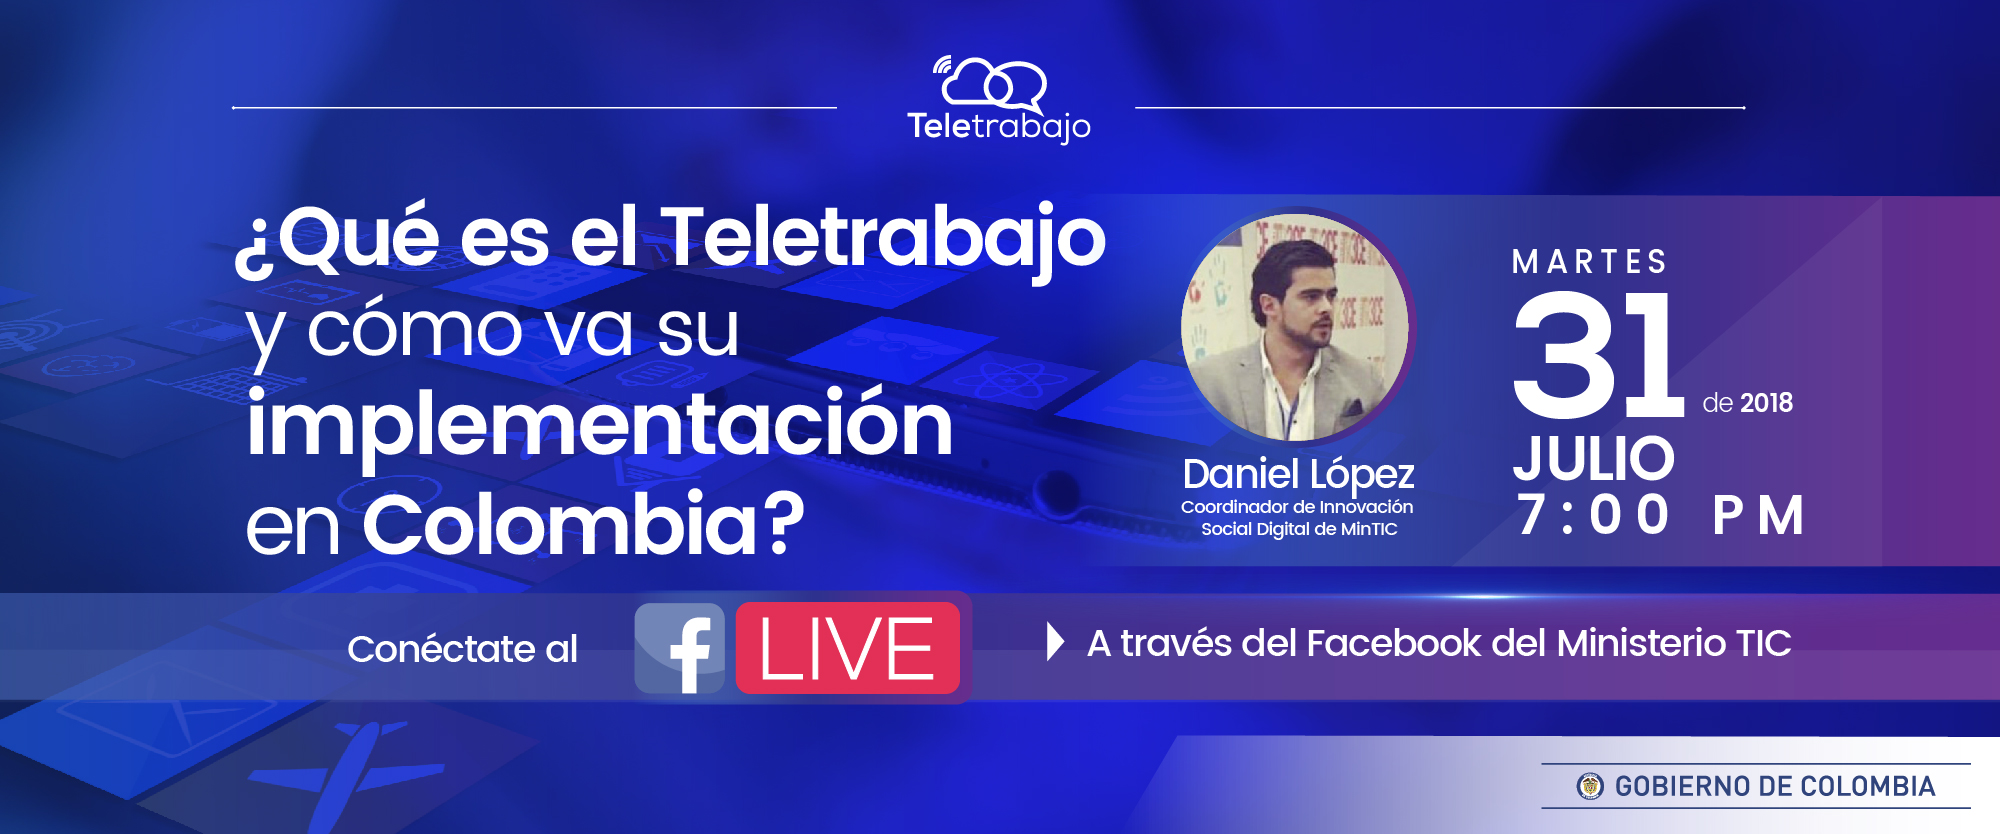 En Facebook Live se presentará ¿Qué es el Teletrabajo y cómo va su implementación en Colombia?